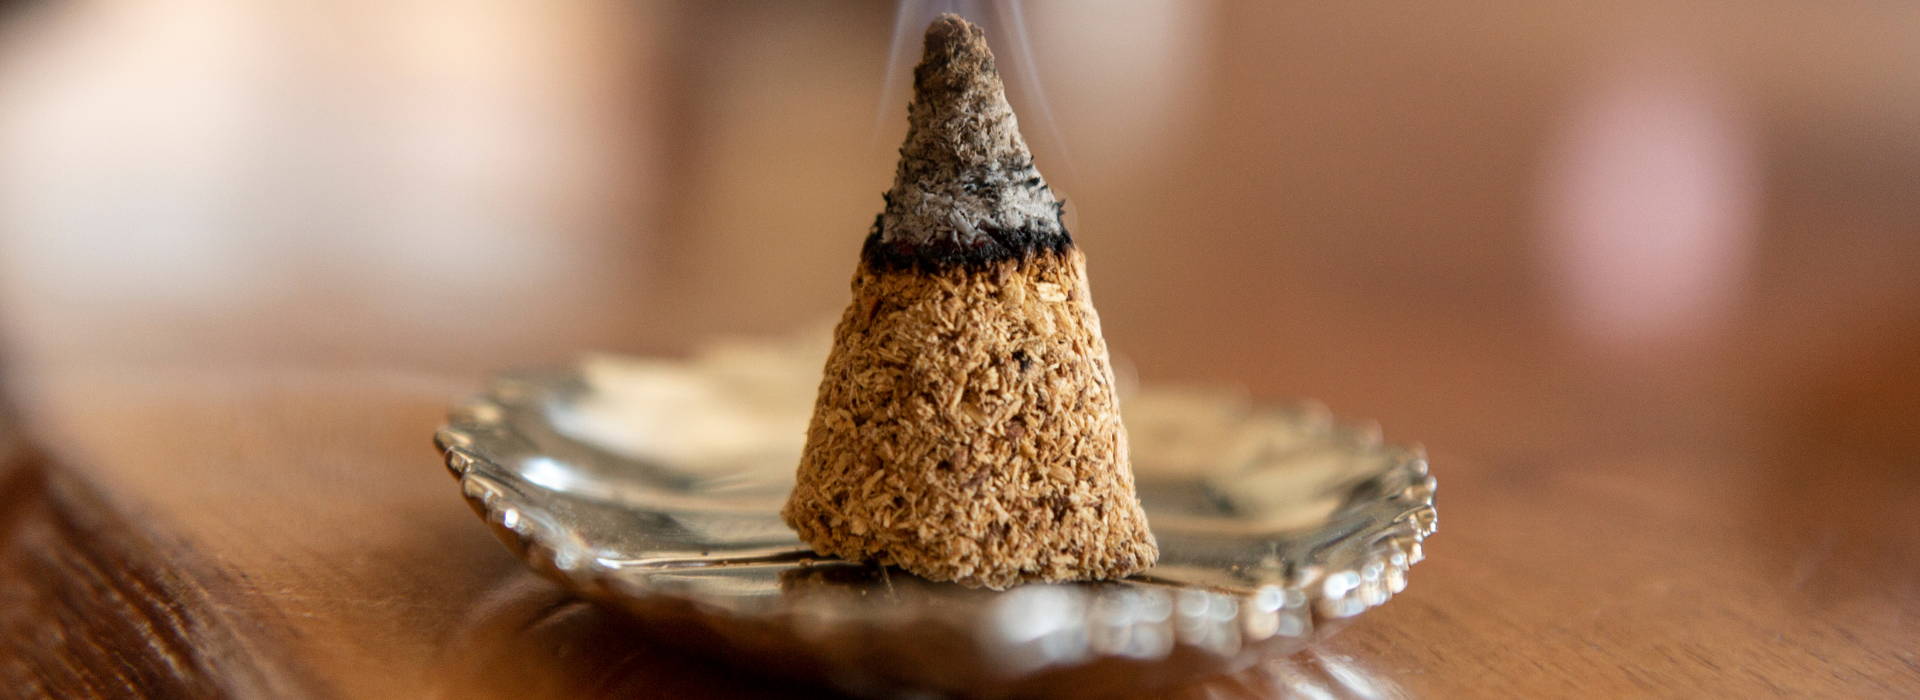 incense cones scents